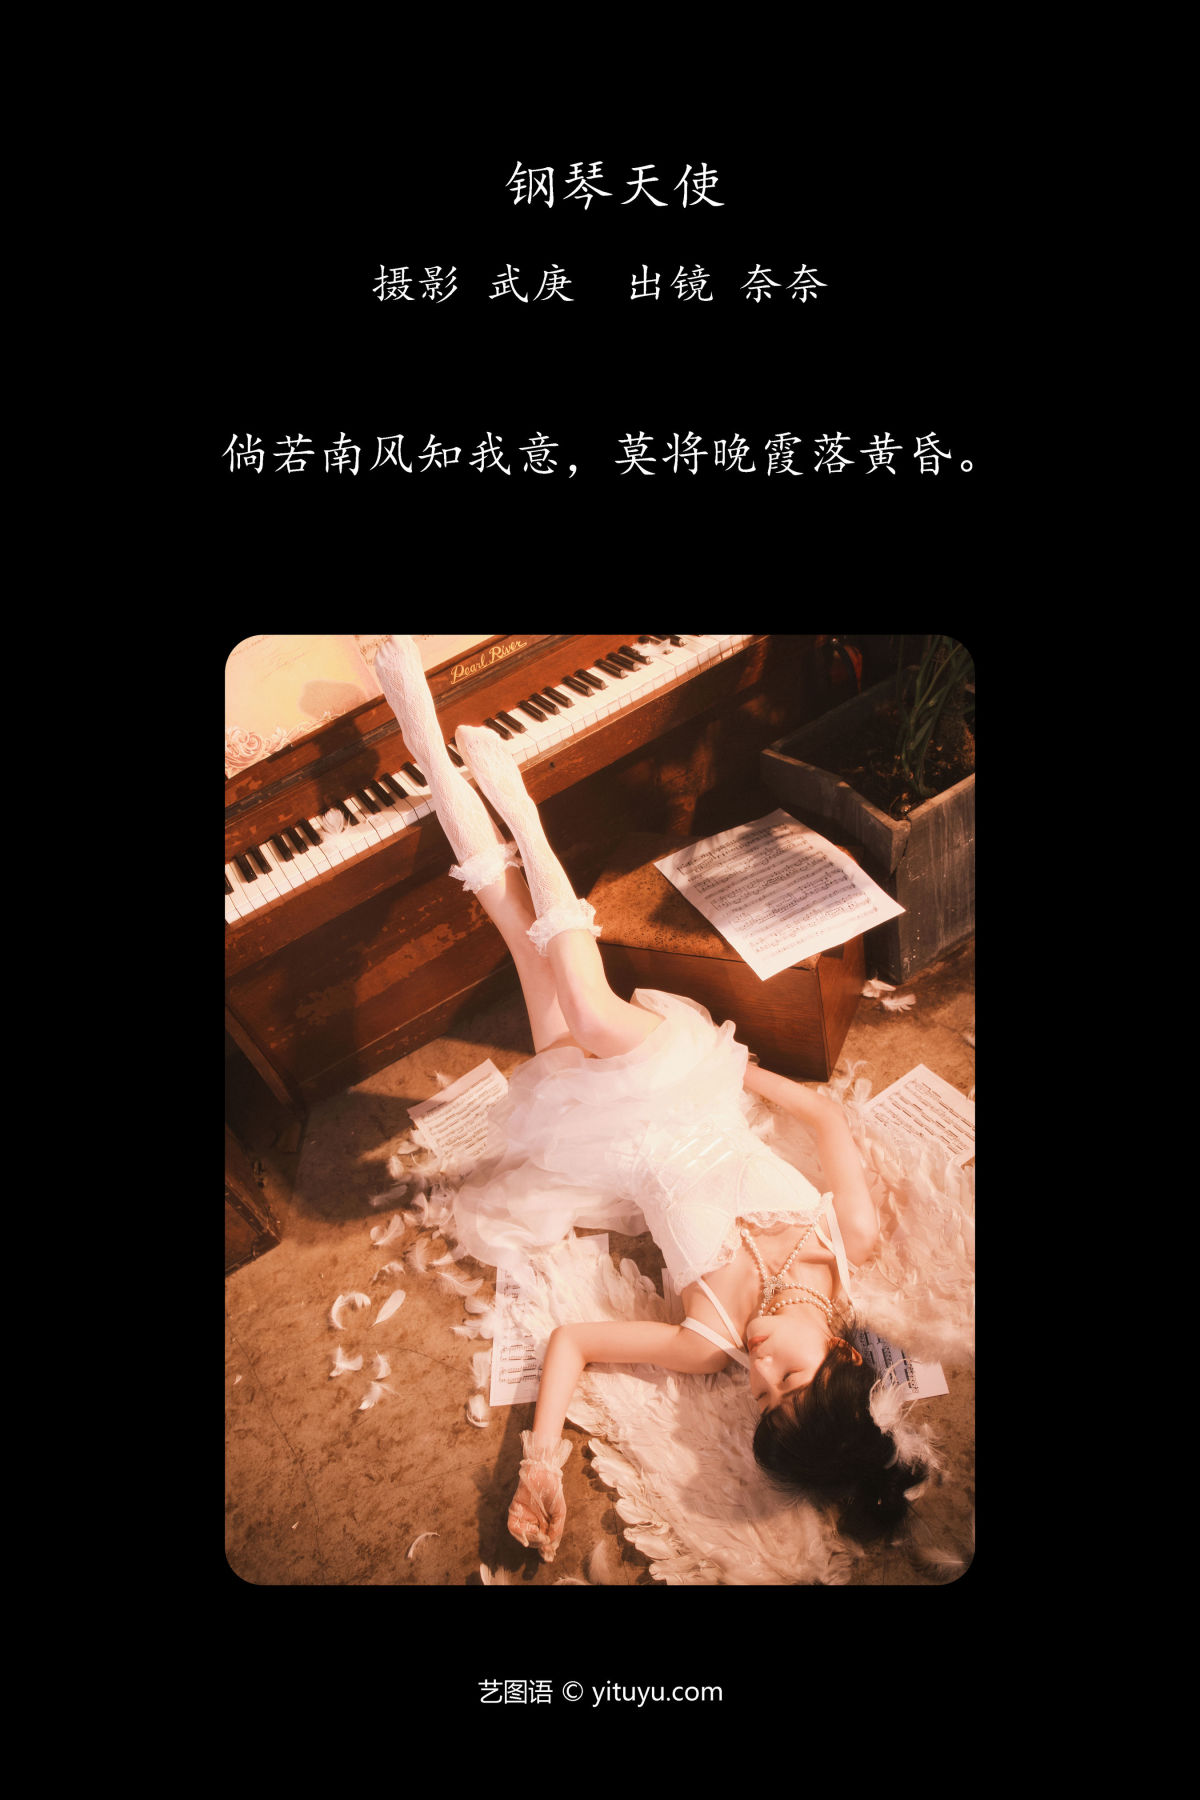 武庚_小松麻奈《钢琴天使》美图作品图片2